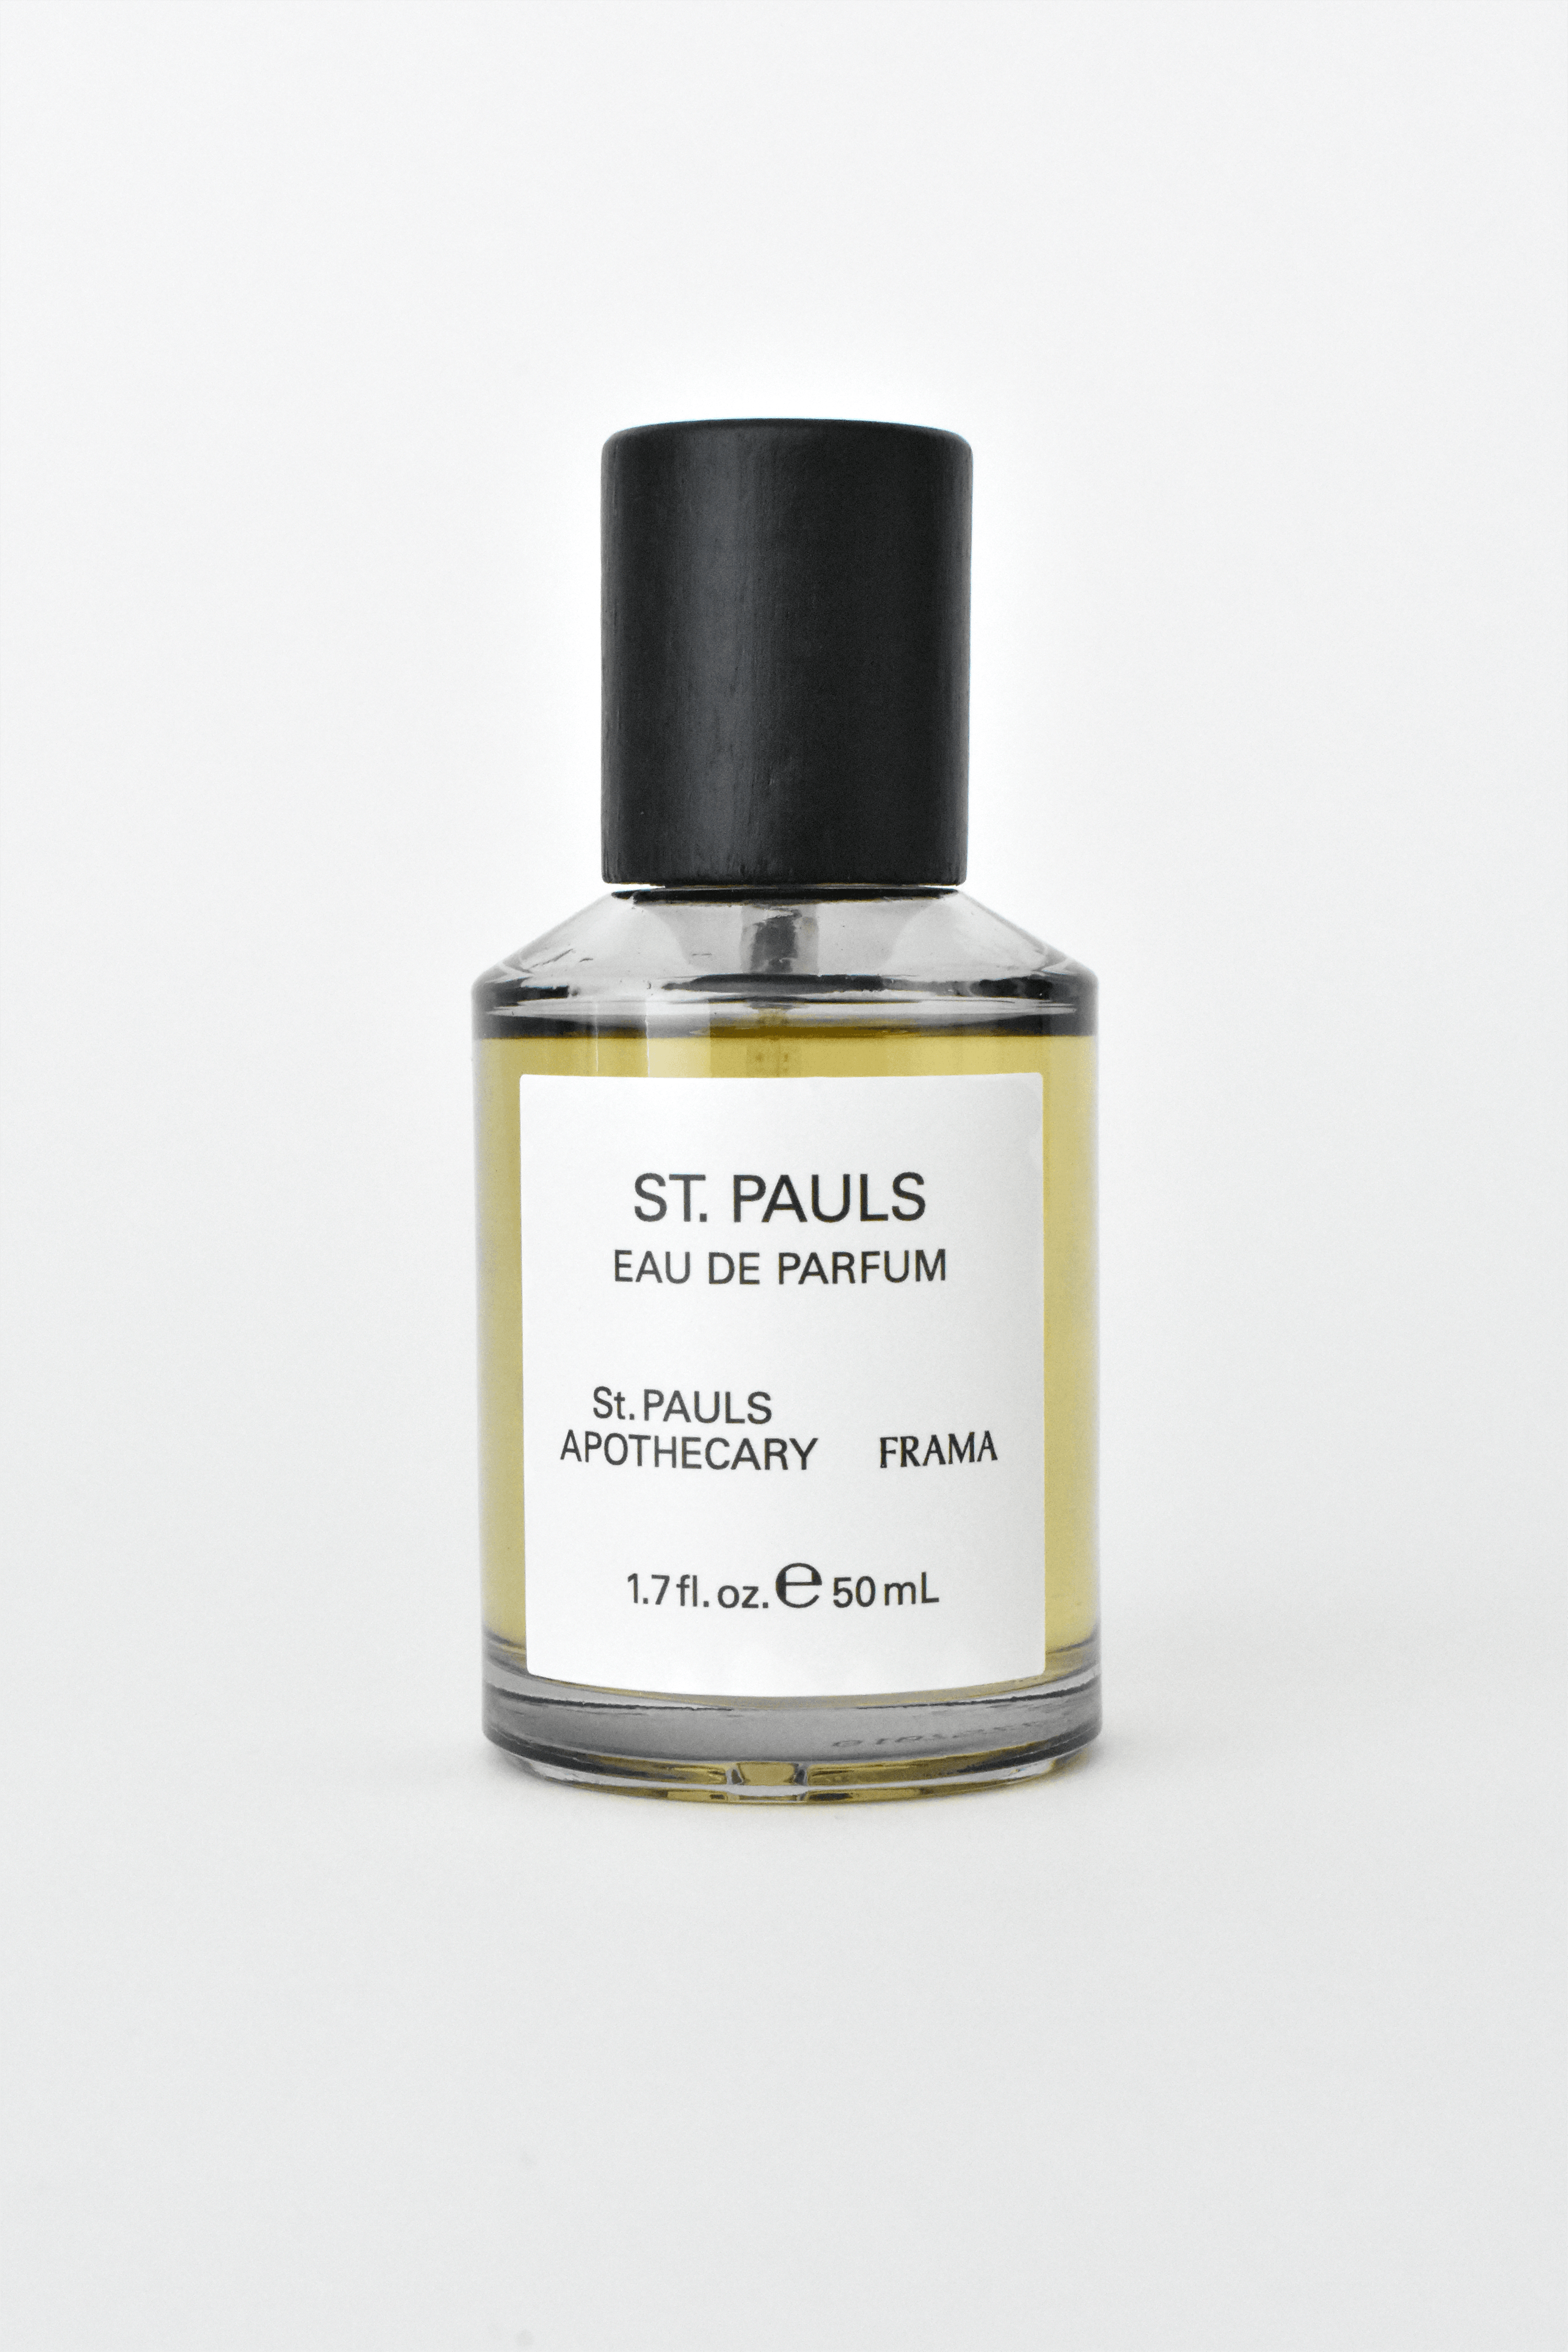 St. Pauls Eau de Parfum 50ml - APORTA Shop